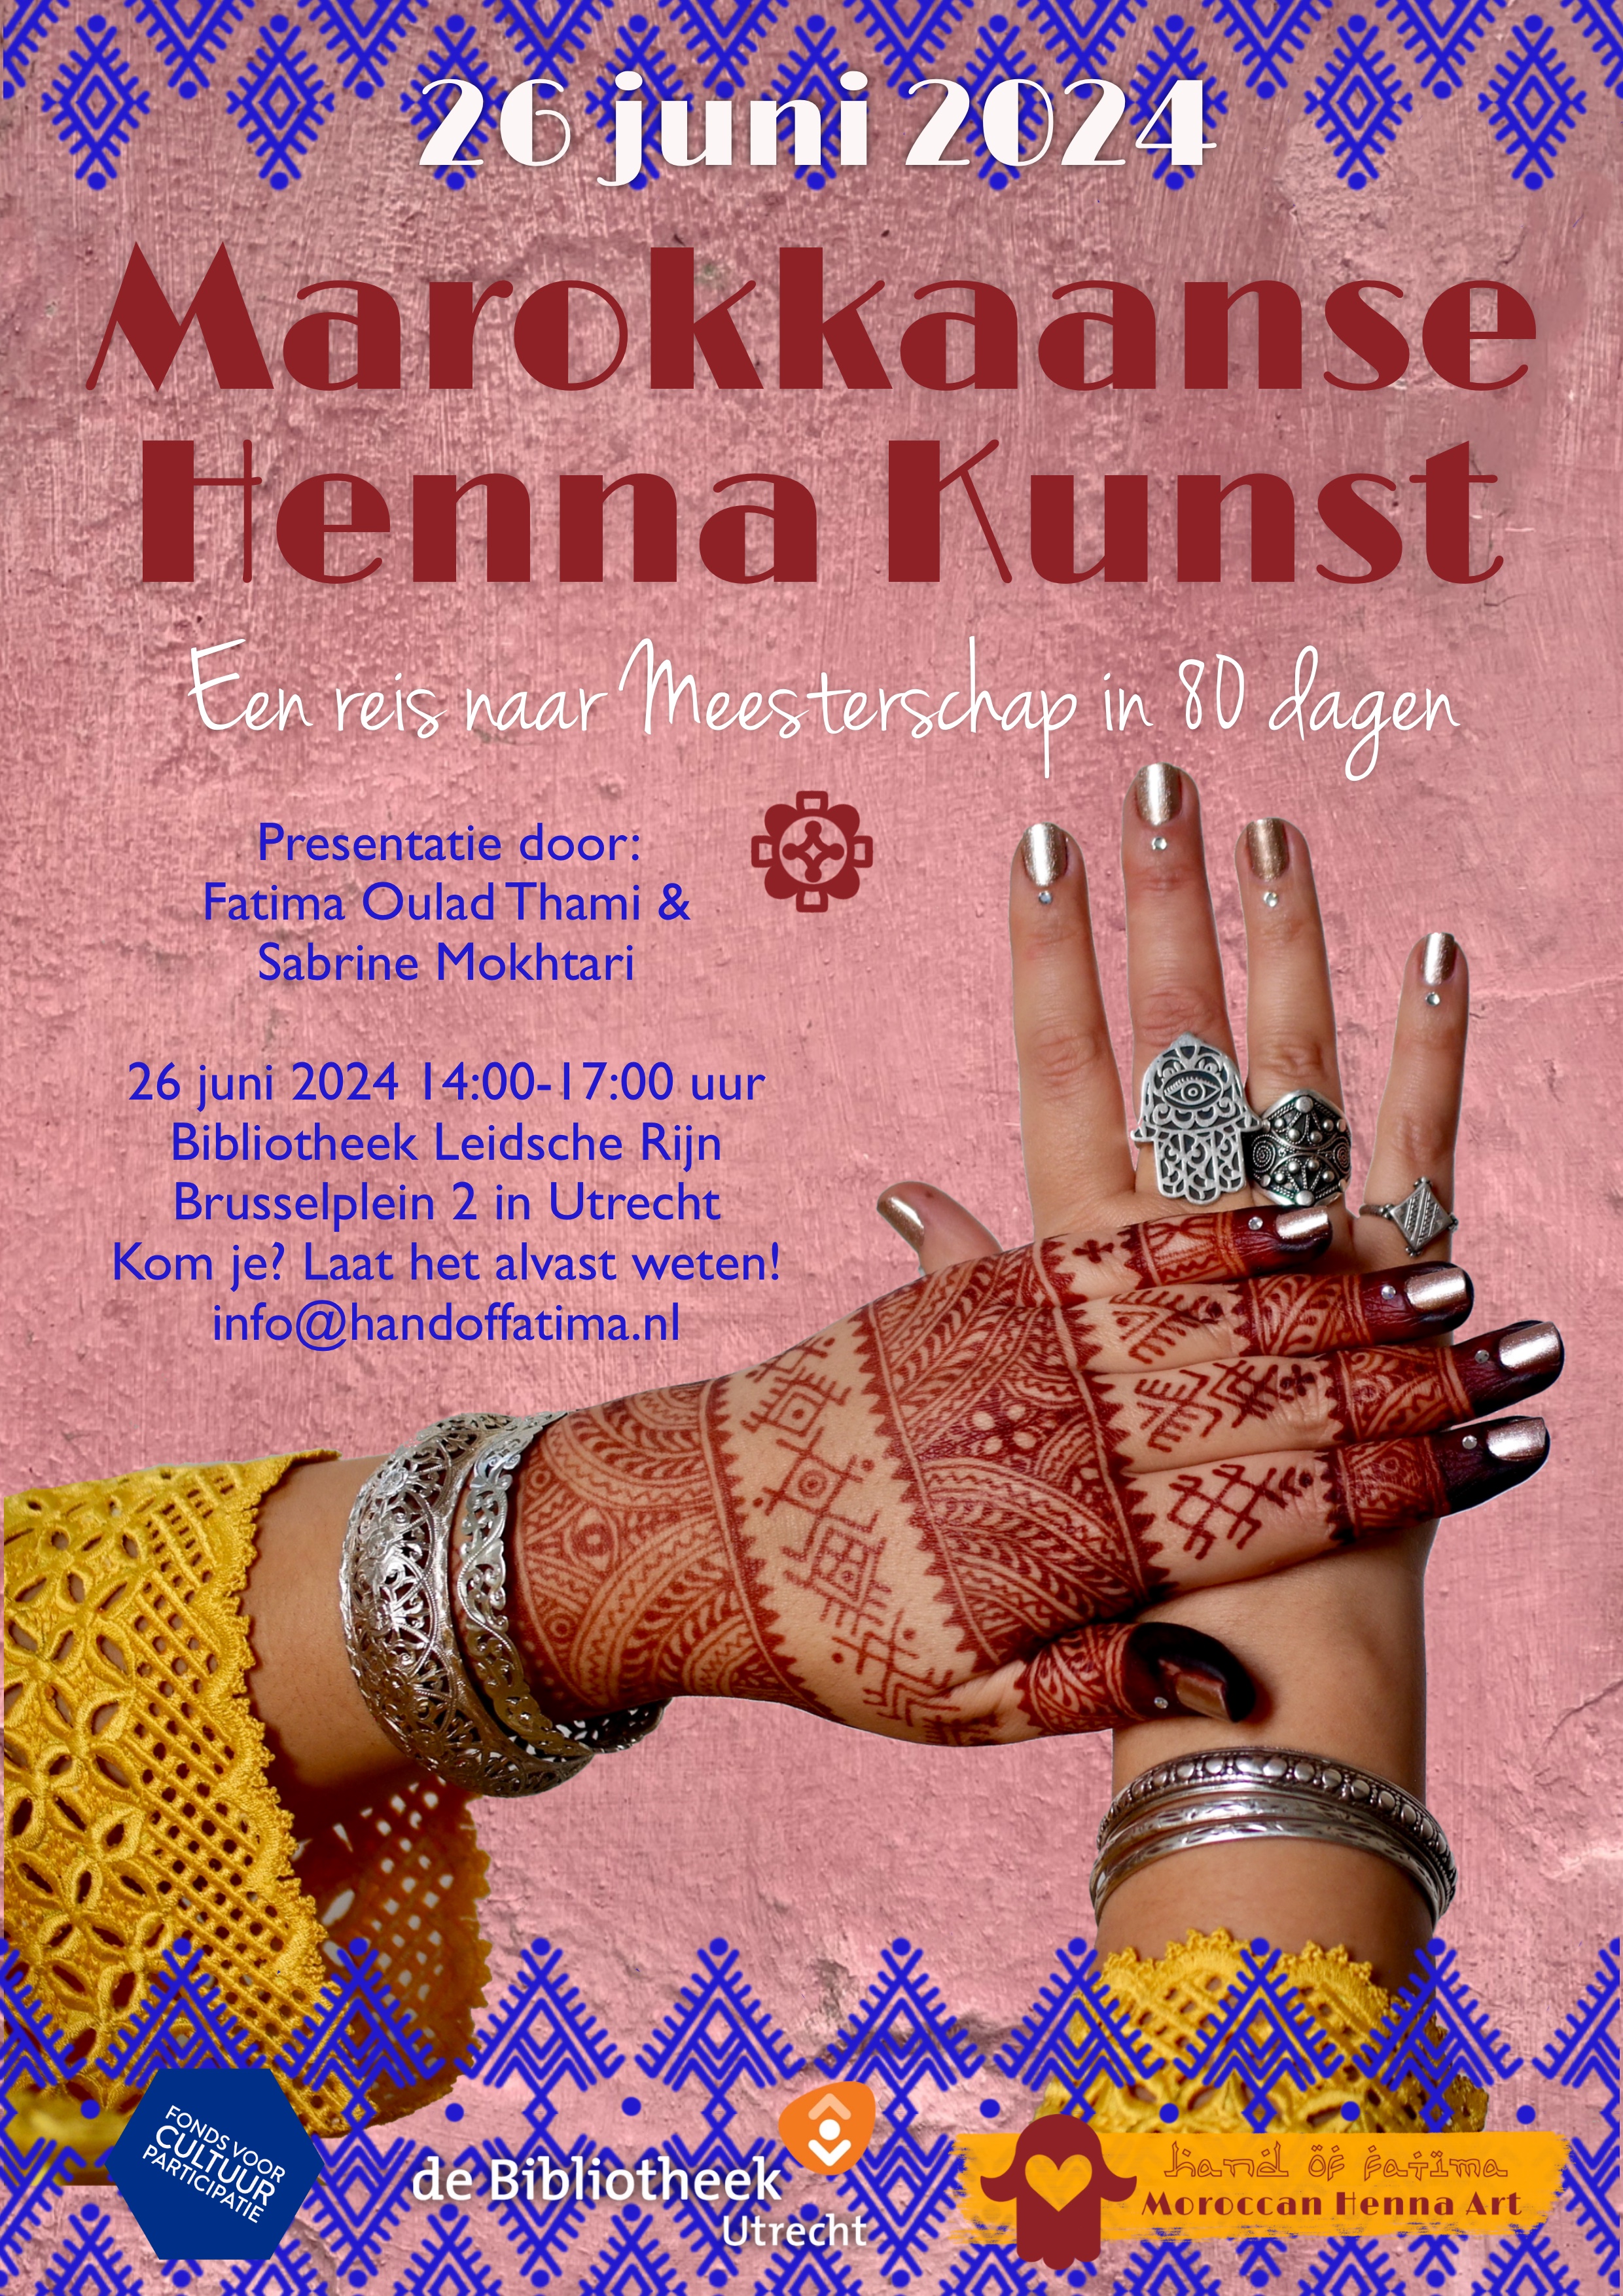 Marokkaanse Henna Kunst een reis naar Meesterschap in 80 dagen